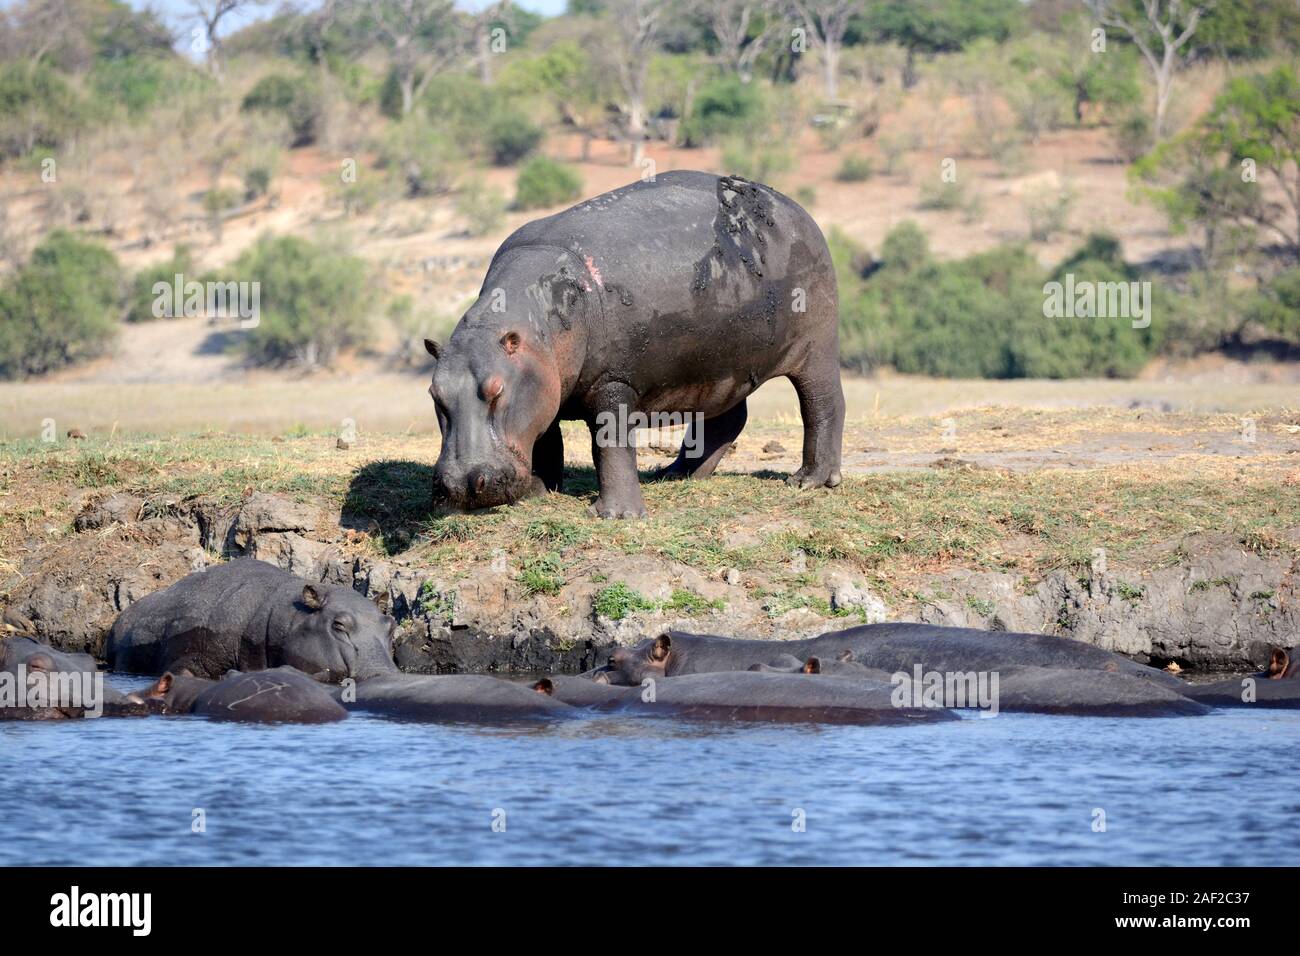 Le pâturage et l'hippopotame dans l'eau de la rivière Okavango Delta Okavango Afrique Botswana Chobe National Park Banque D'Images